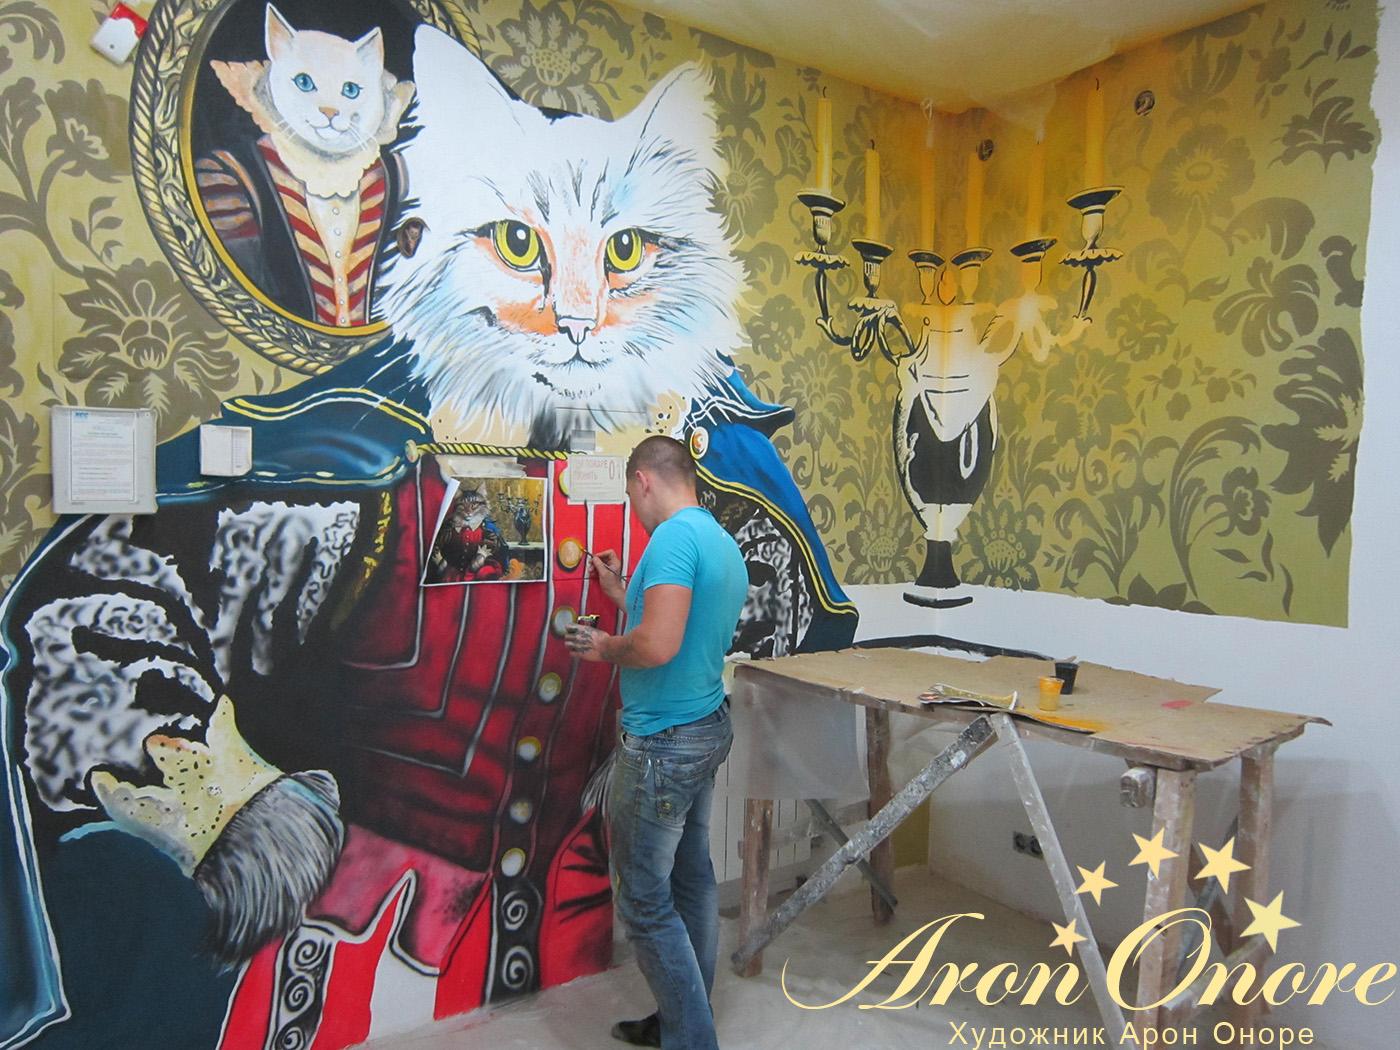 художник арон аноре занимается роспись стен в магазине